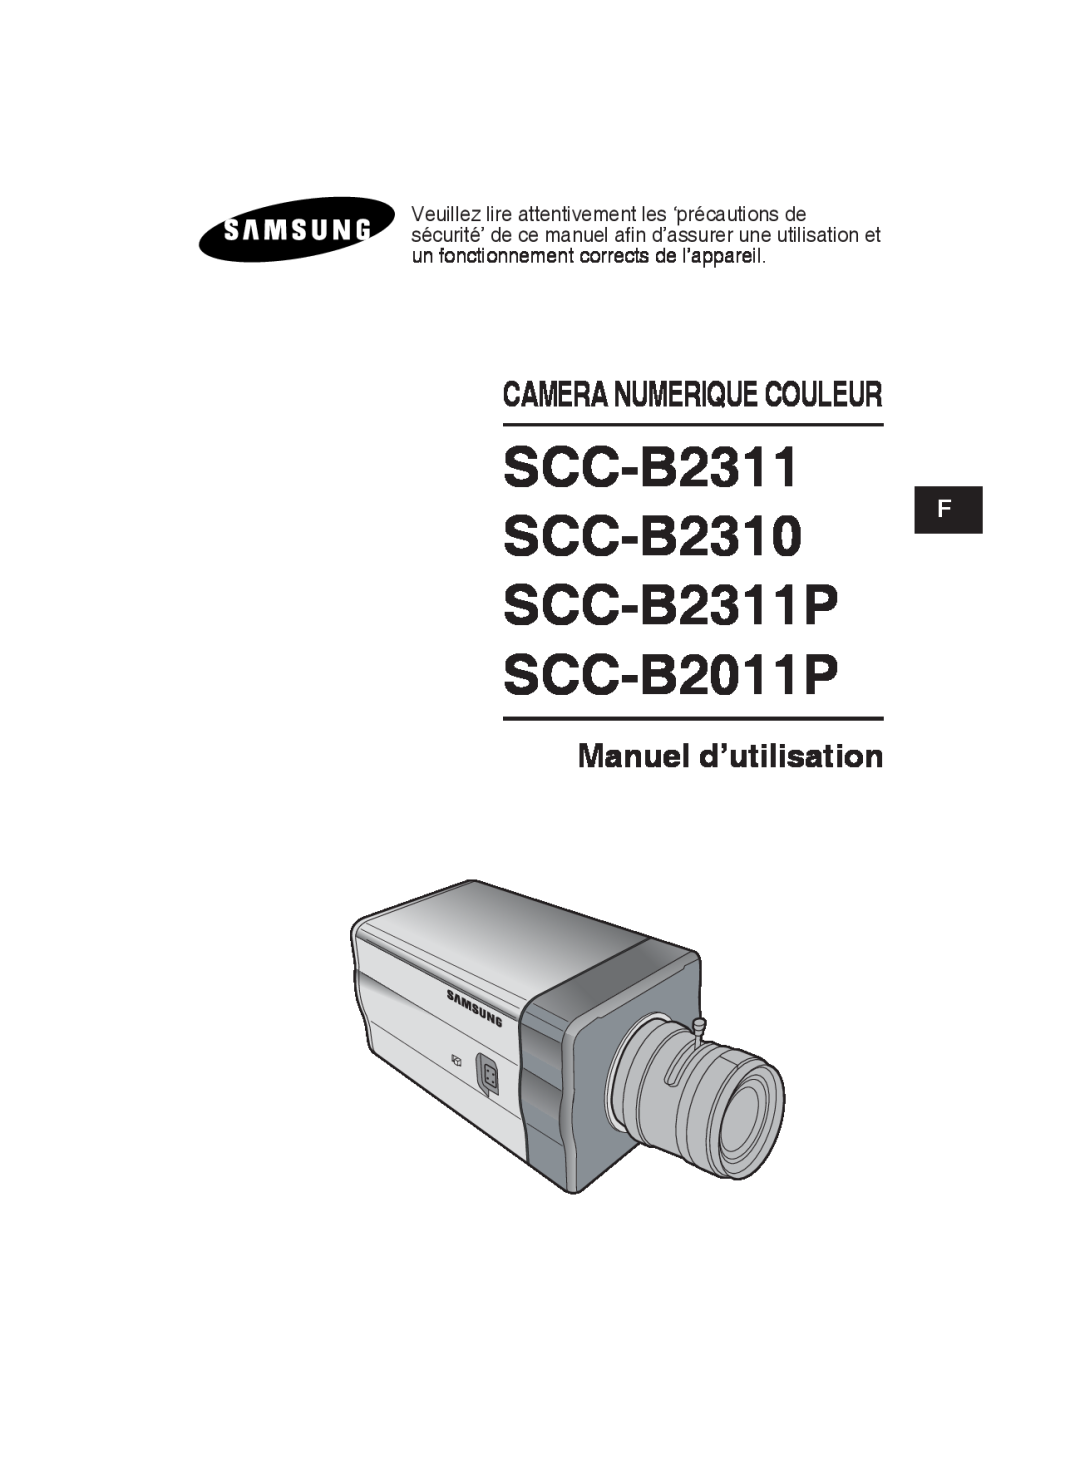 Samsung SCC-B2311P/TRK manual SCC-B2311 SCC-B2310 F SCC-B2311P SCC-B2011P, Manuel d’utilisation, Camera Numerique Couleur 